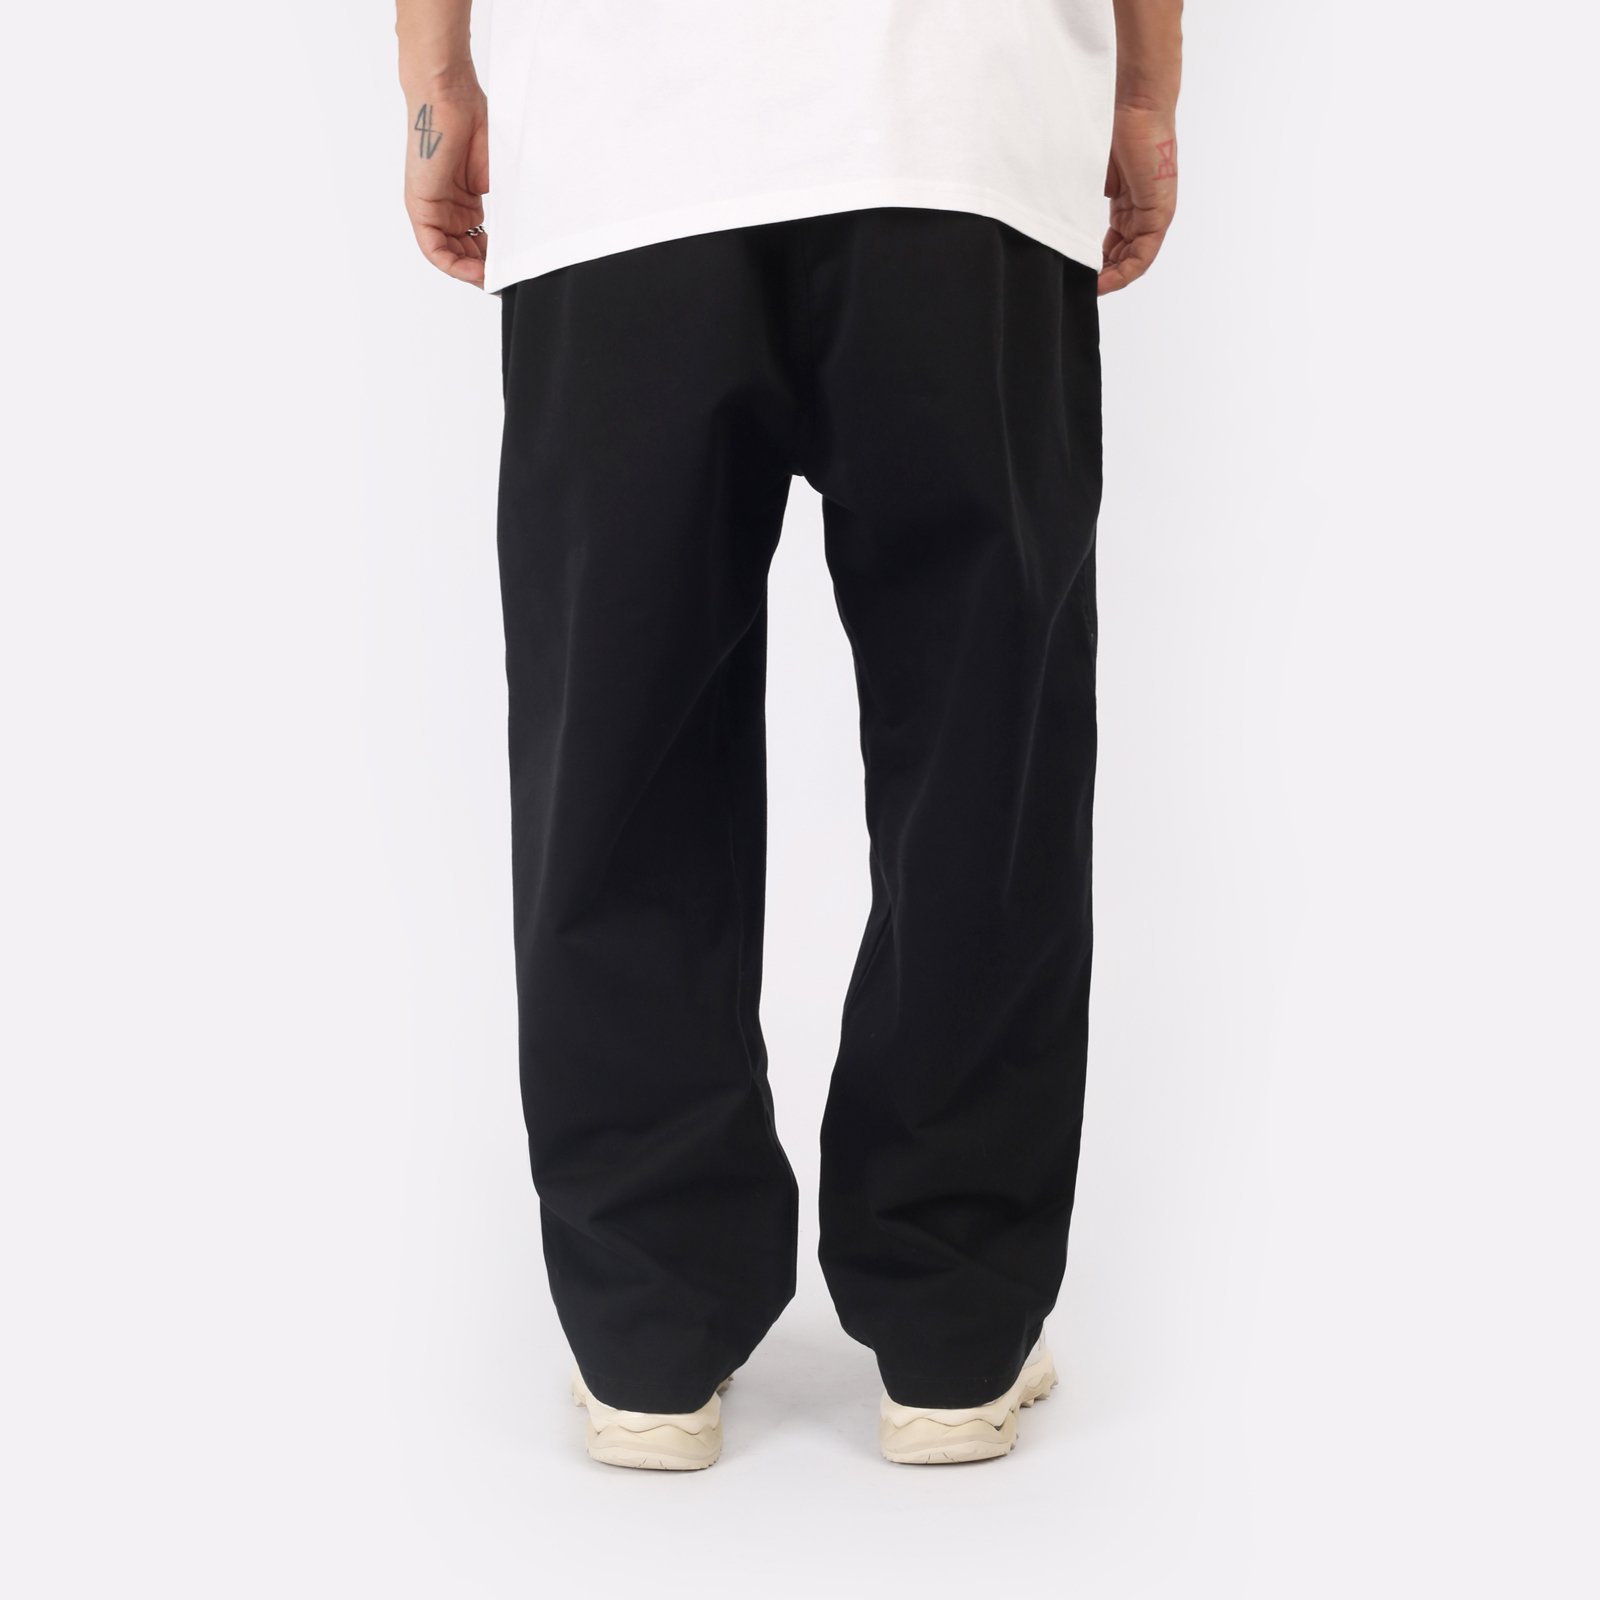 мужские черные брюки Carhartt WIP Marv Pant I033129-black - цена, описание, фото 2